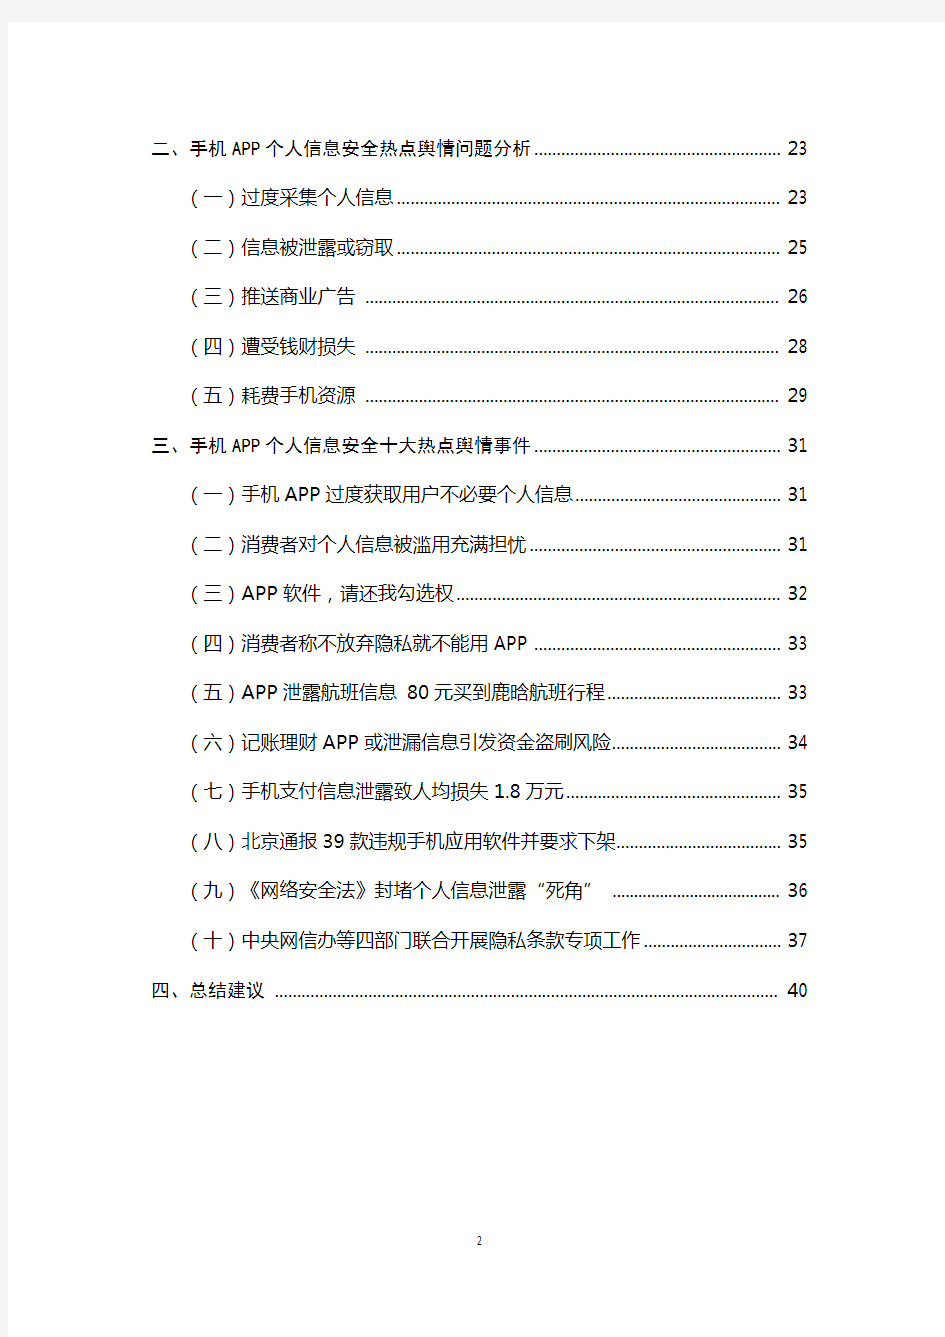 手机APP个人信息安全问卷调查结果及建议-中国消费者协会